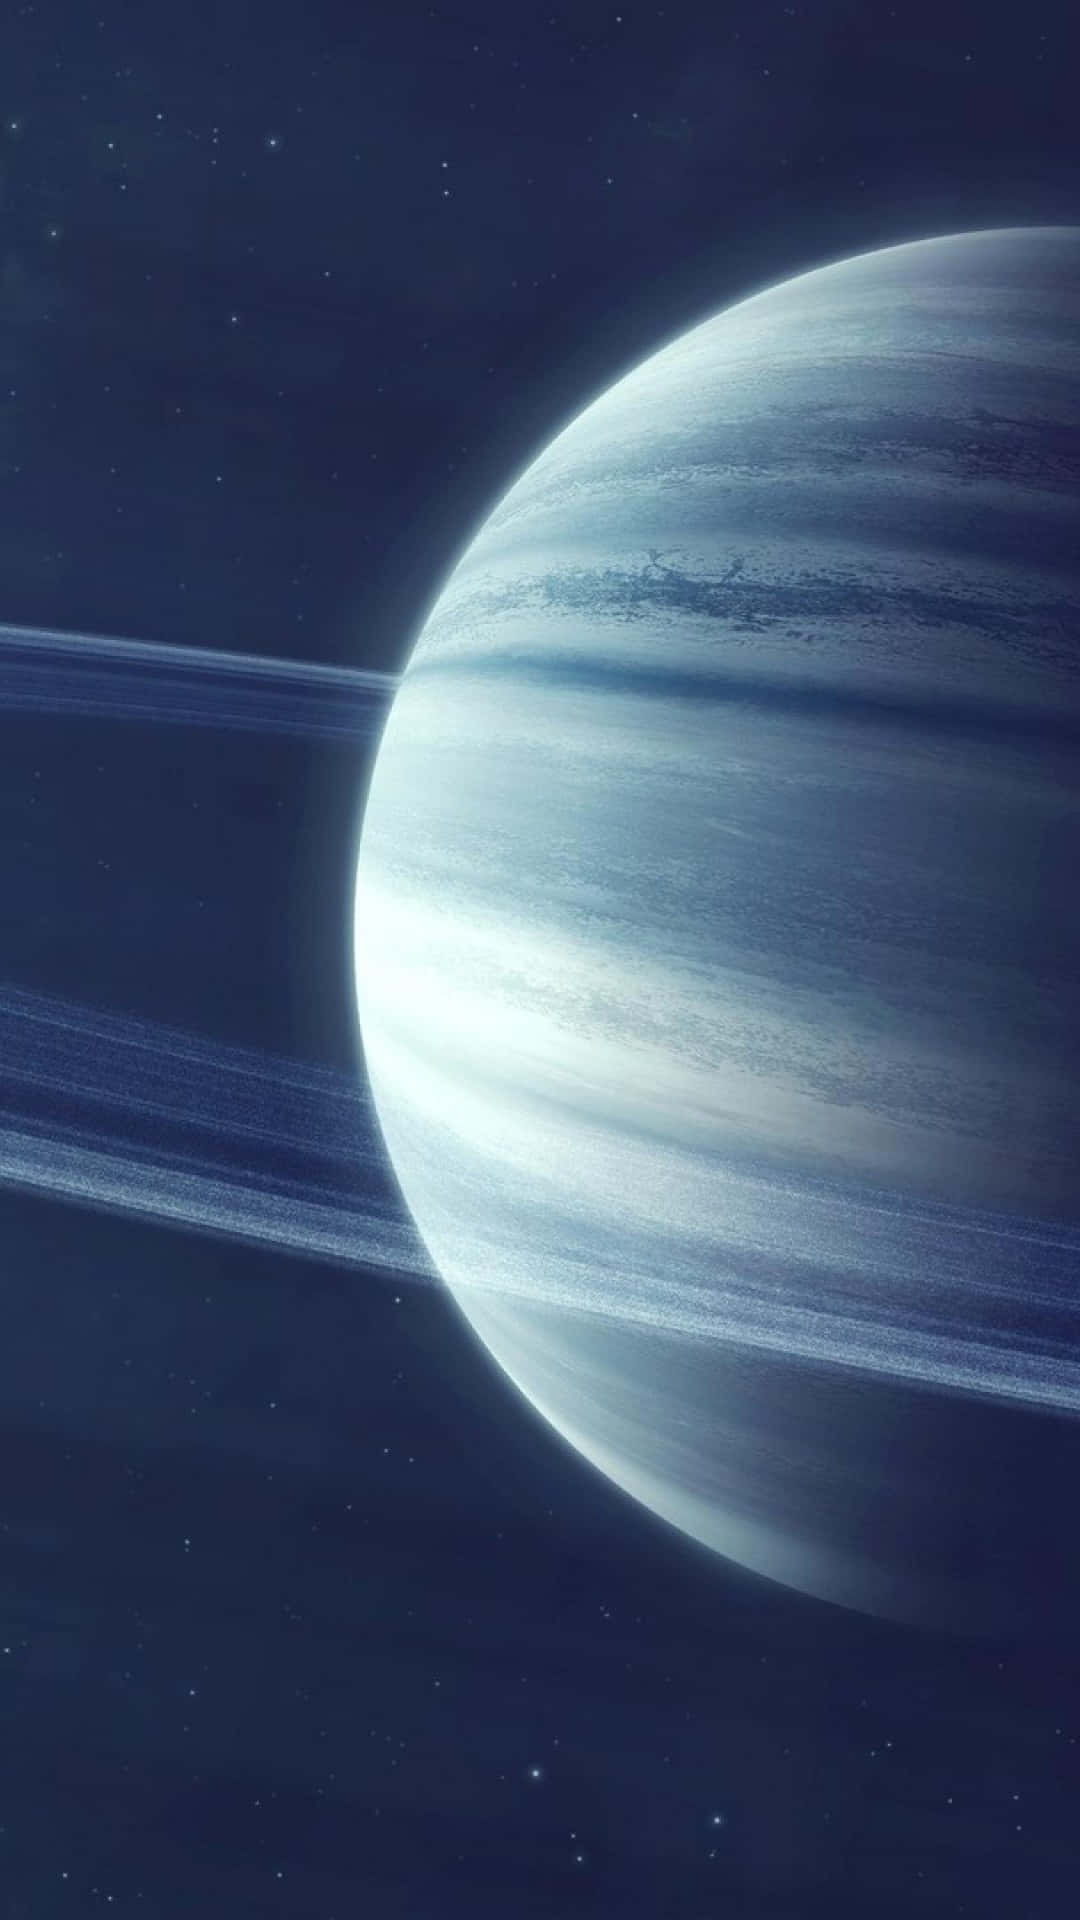 Saturnomajestuoso En El Espacio Exterior.